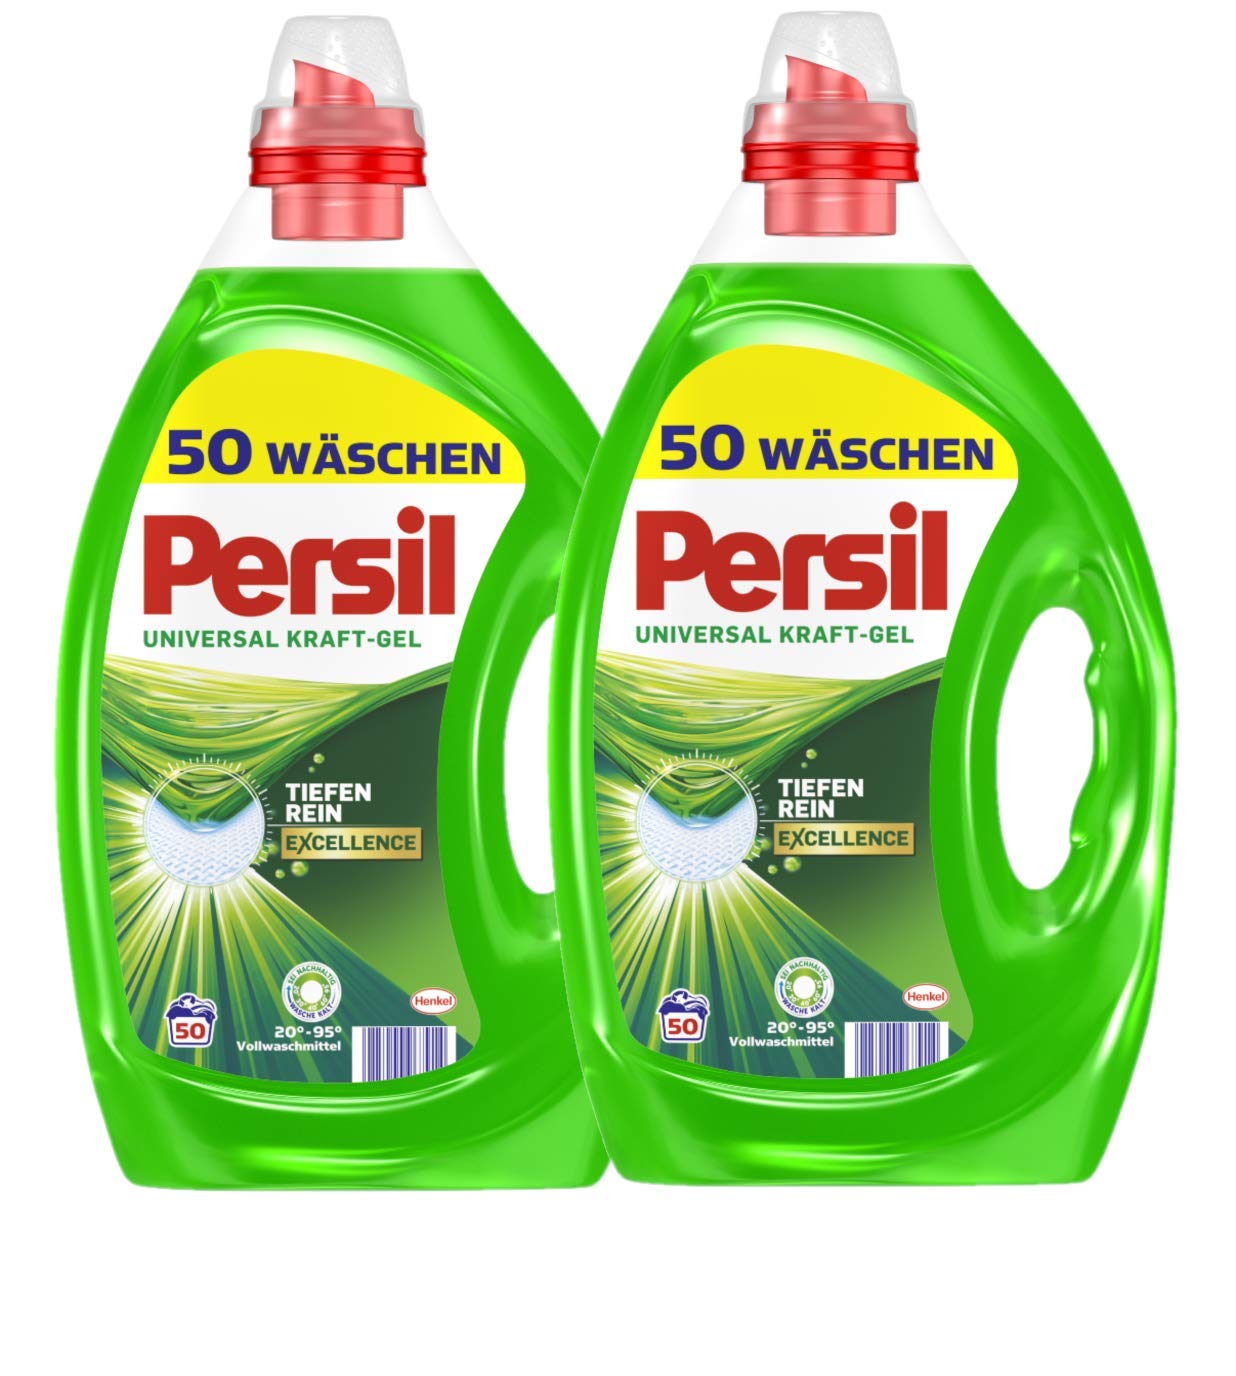 Persil Universal Kraft-Gel 2er-Pack Excellence Flüssigwaschmittel mit Tiefenrein-Technologie 100 (2x50) Waschladungen